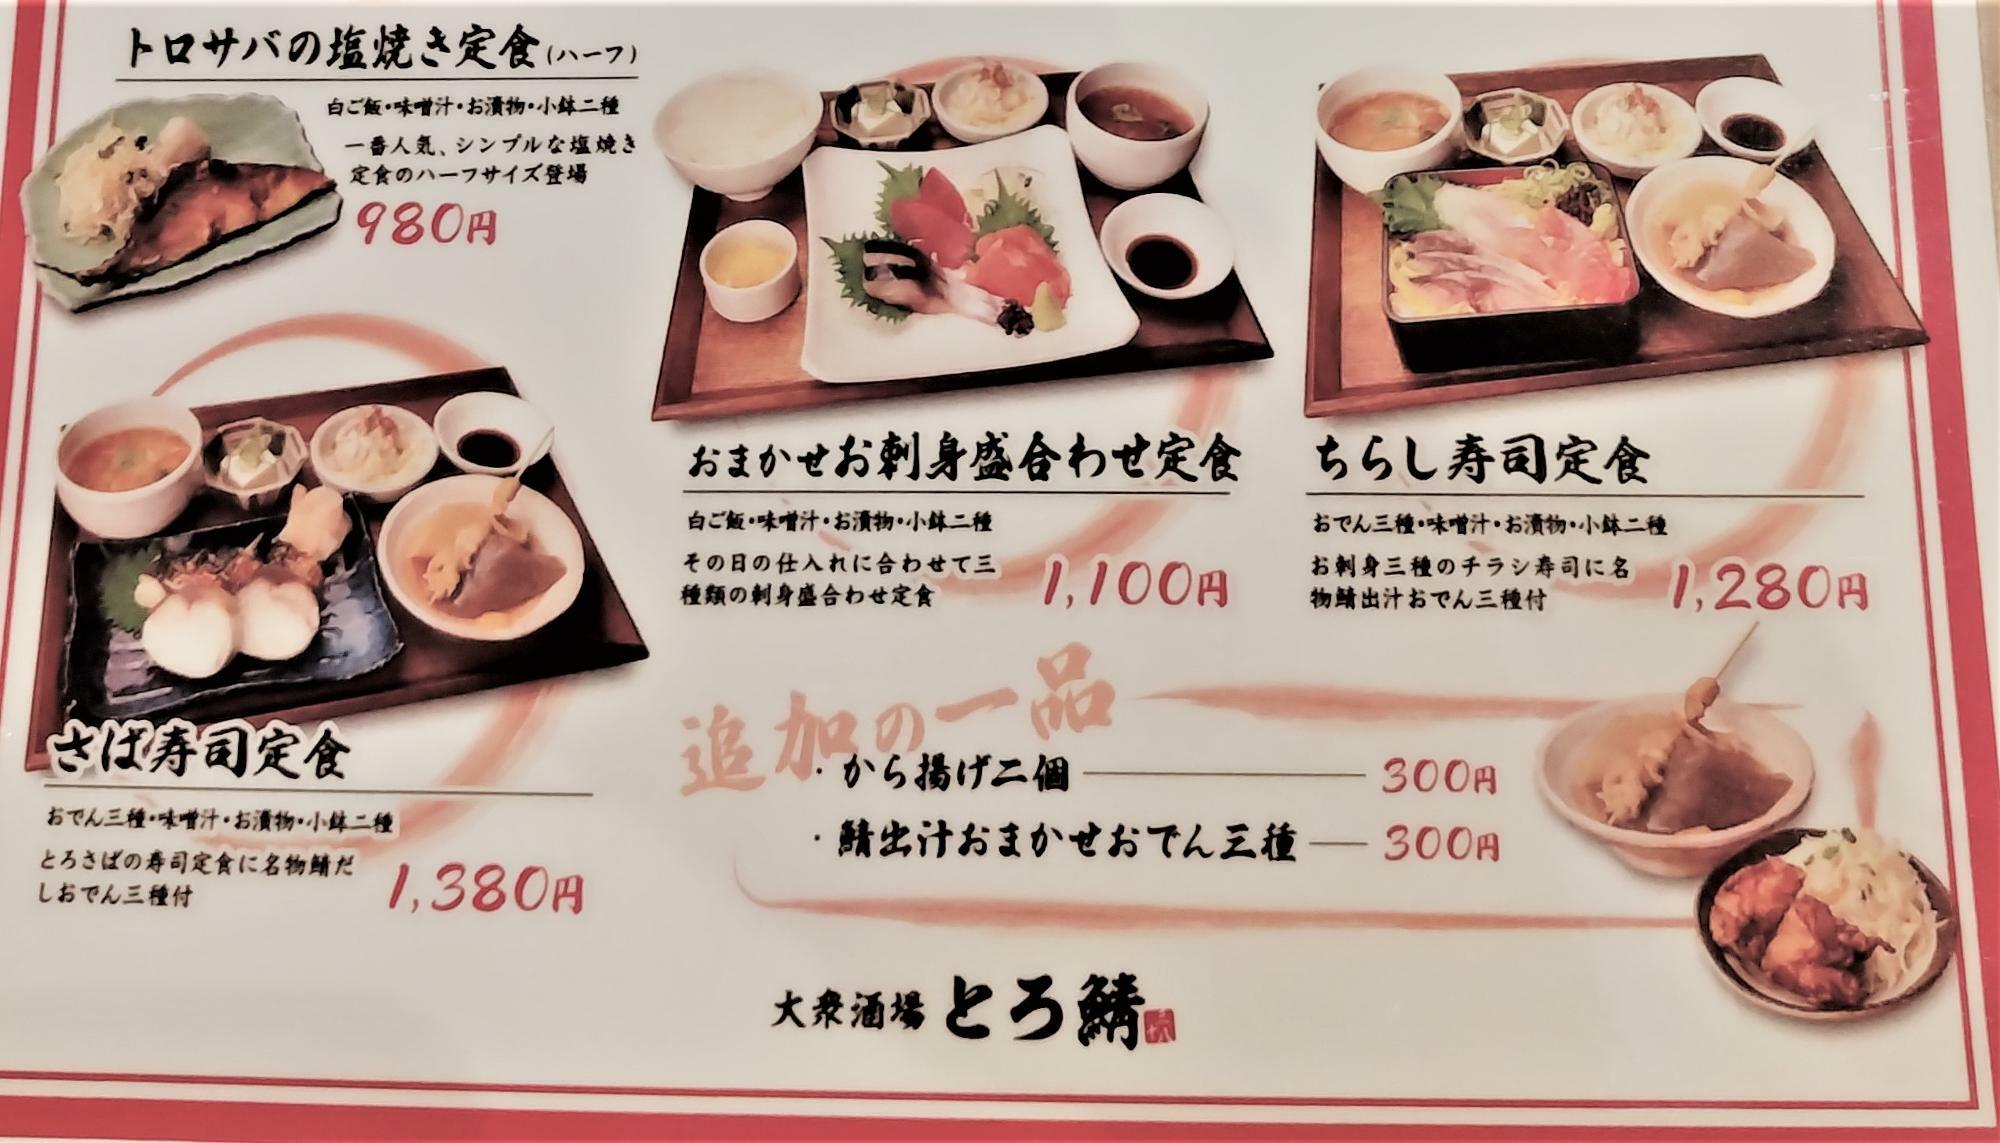 夜の場合は「鯖出汁おまかせおでん三種」が490円(税込)とのこと。